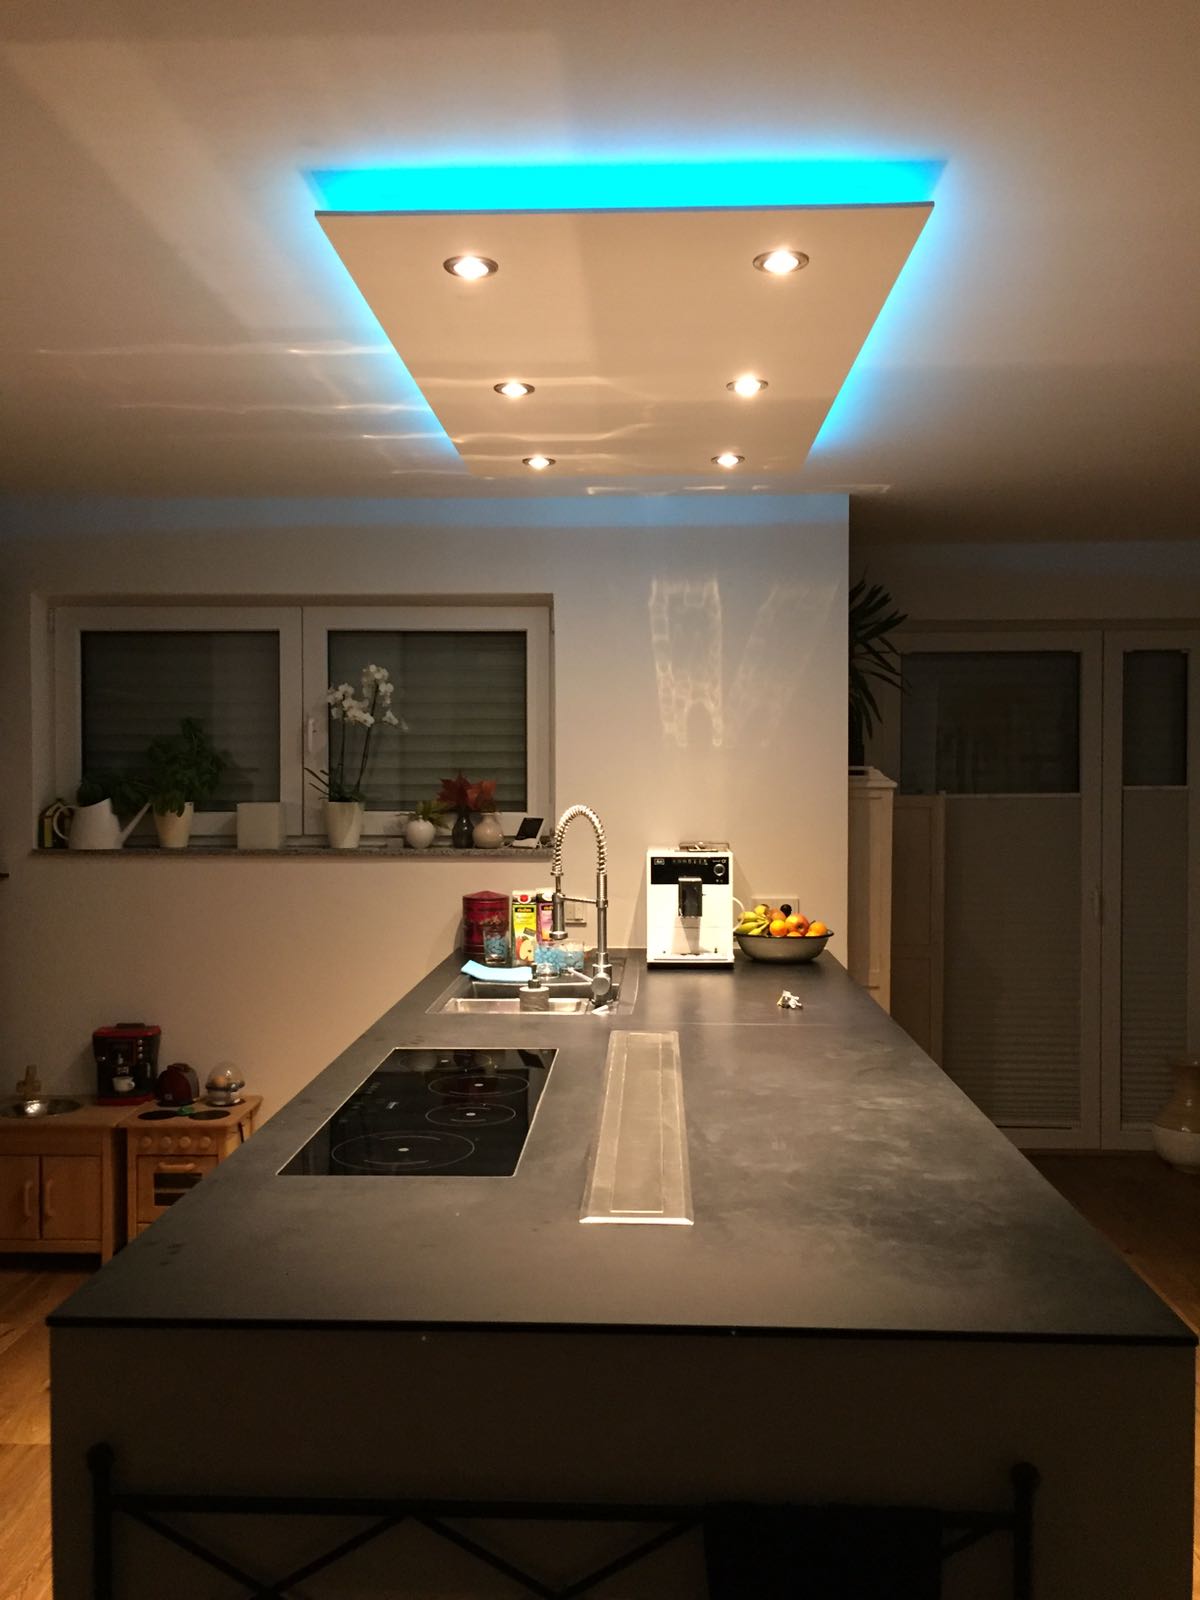 Подвесной потолок с подсветкой на кухне